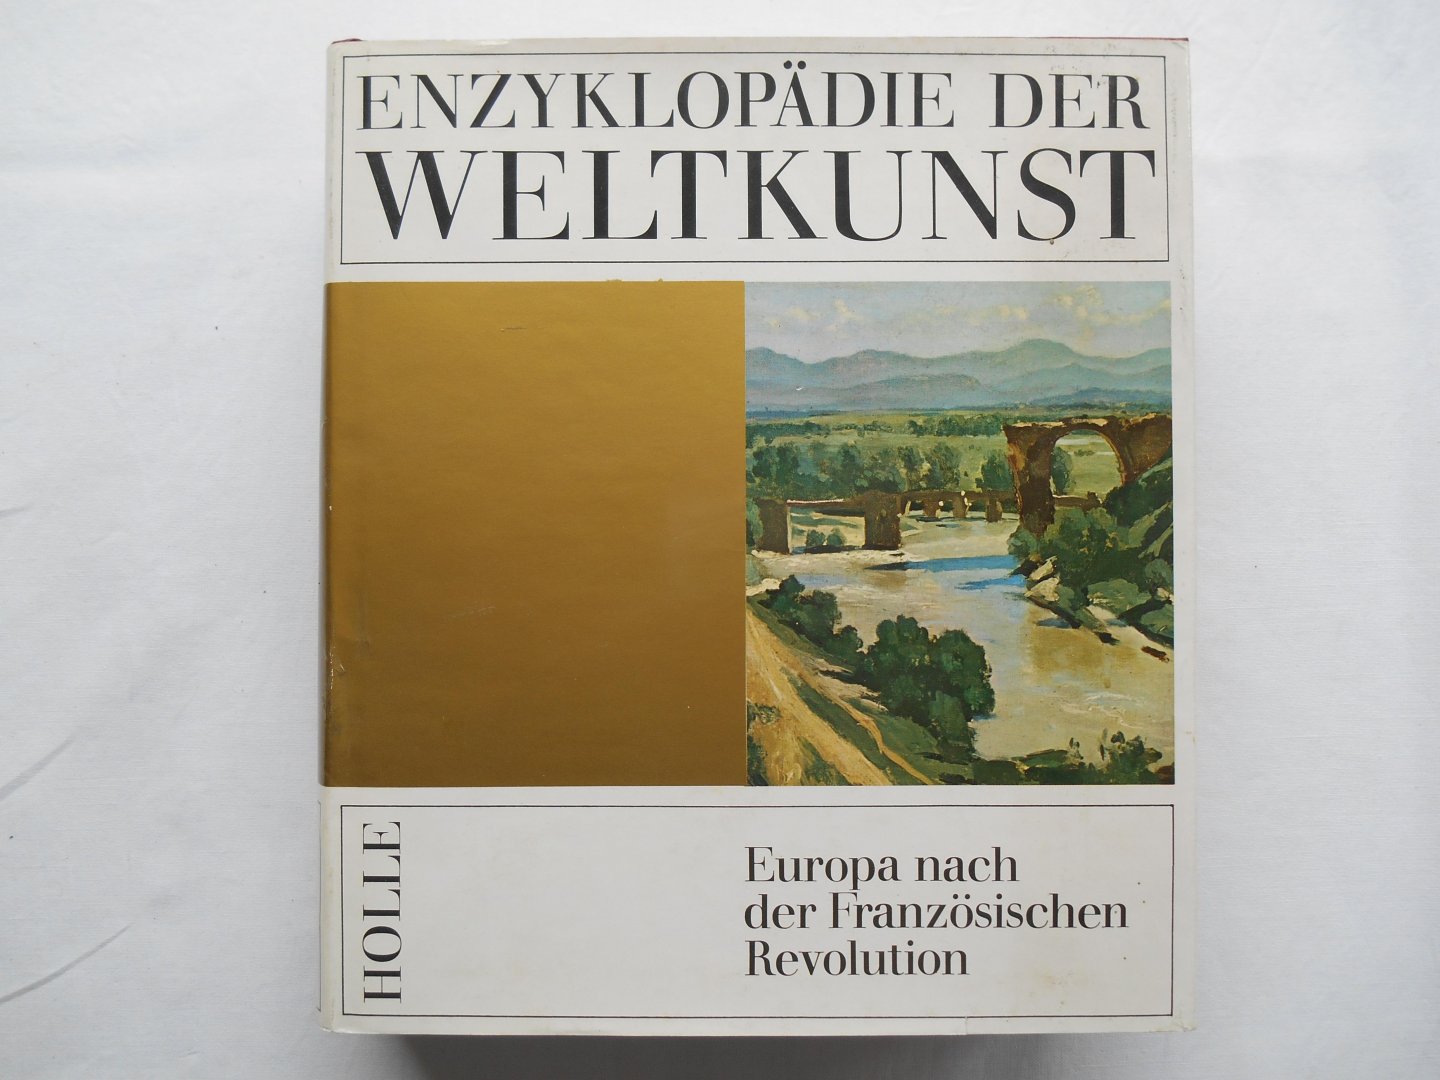  - Enzyklopädie der Weltkunst - Band 7 : Europa nach der Französischen Revolution.